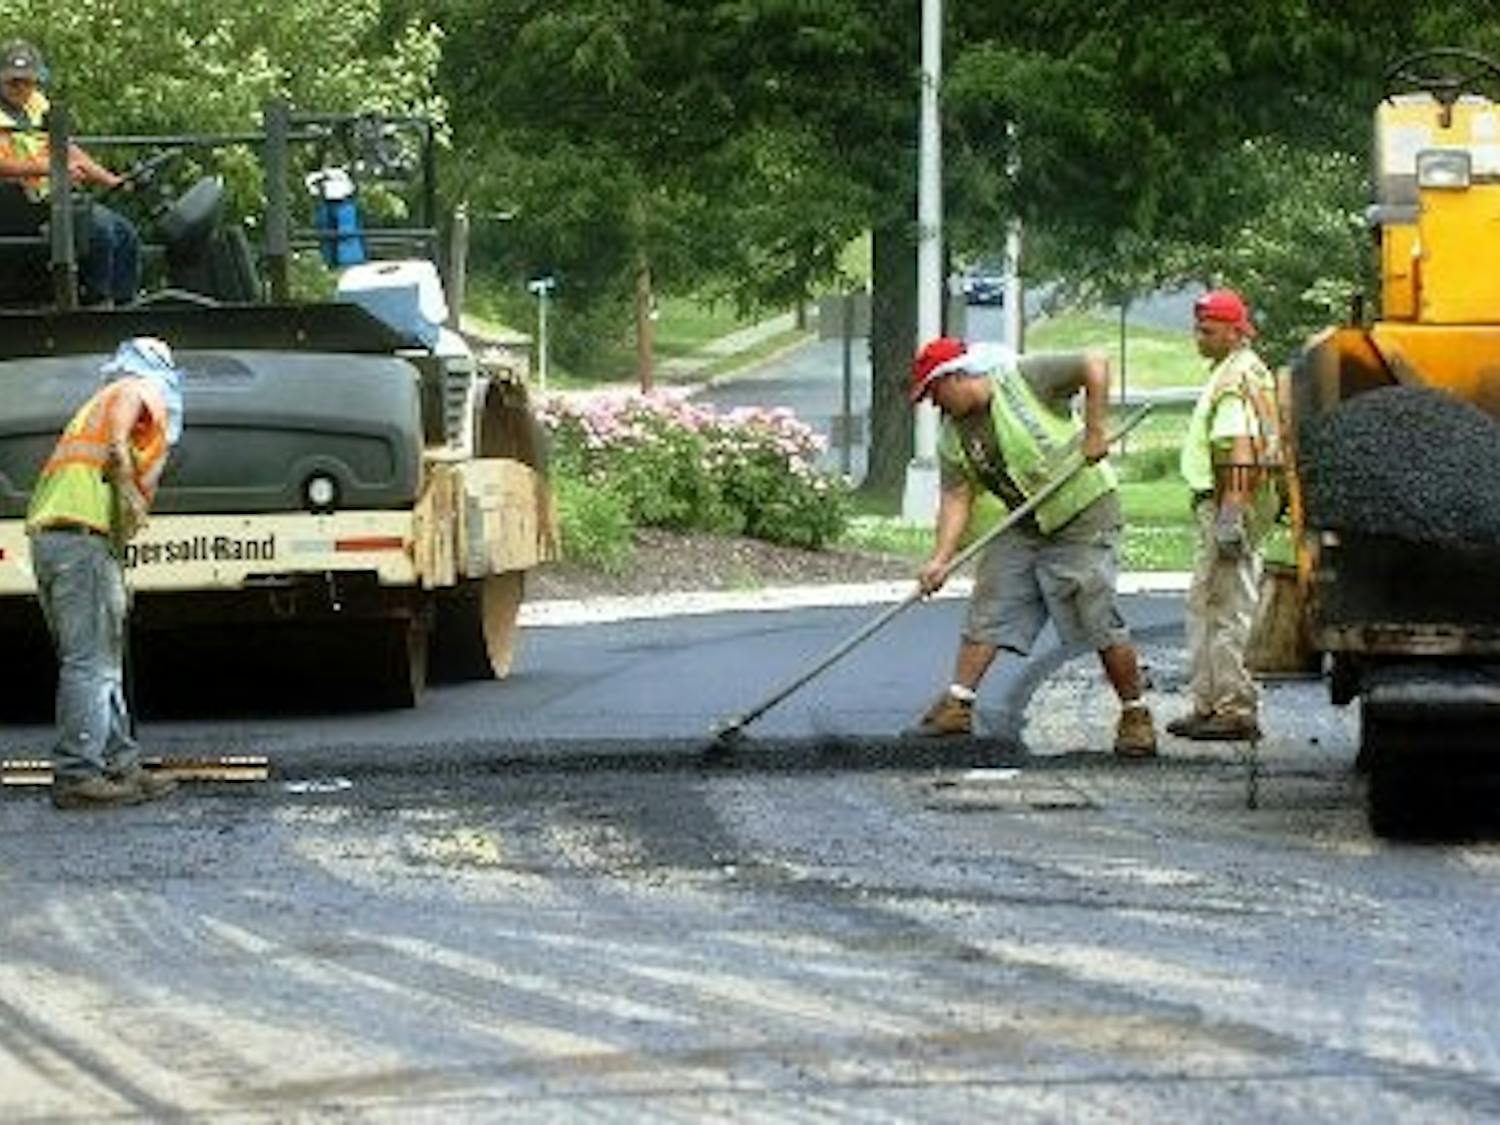 Road resurfacing work